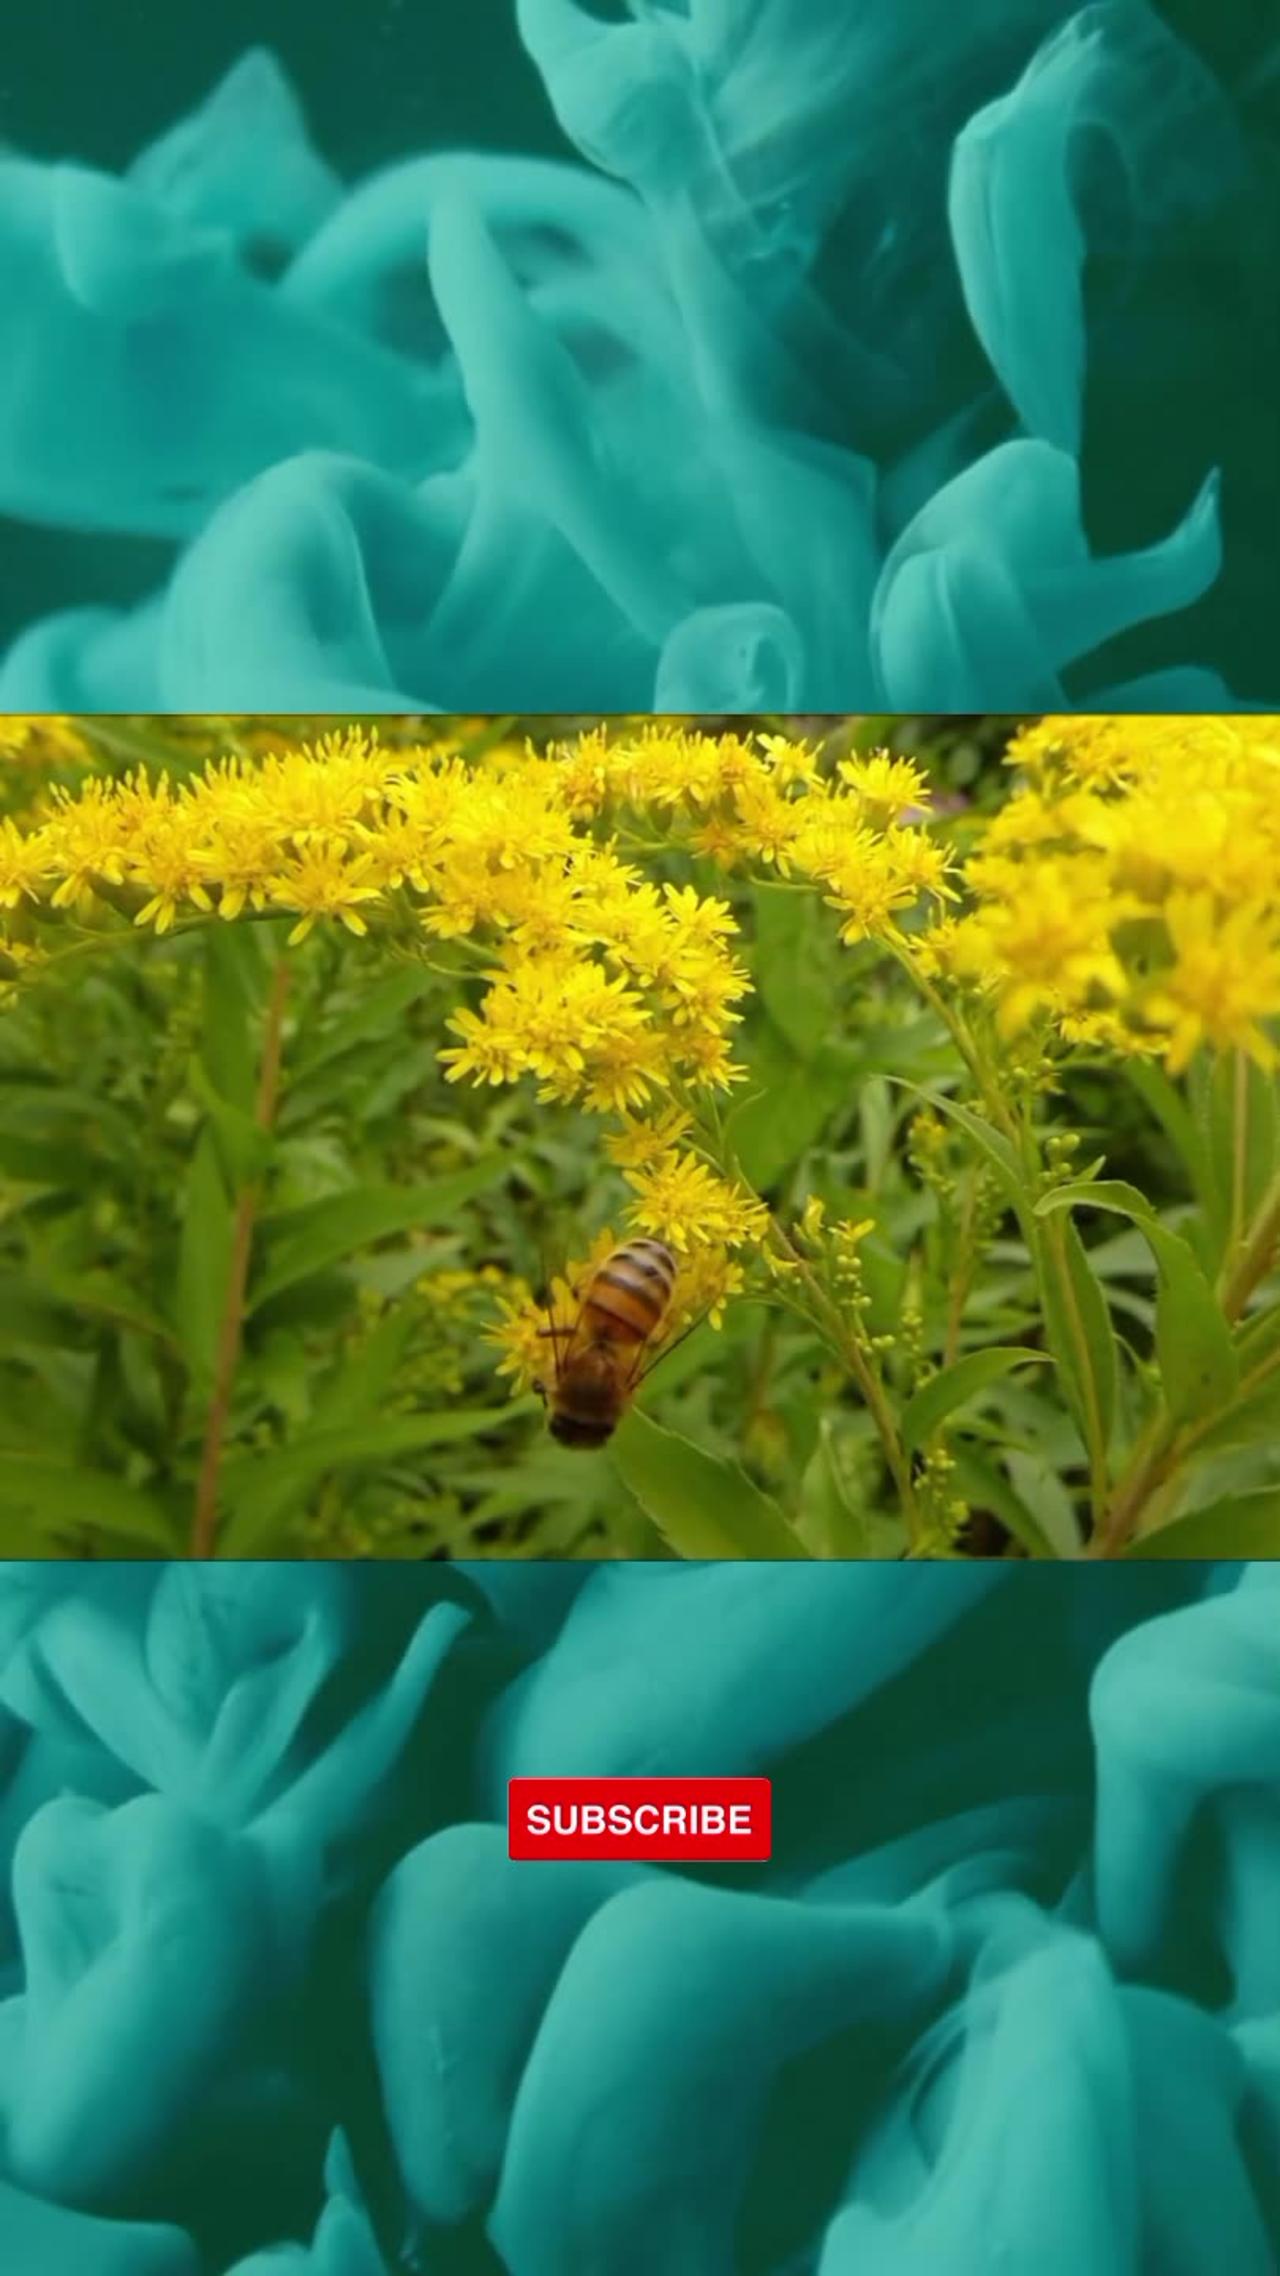 Busy Bee | Honey Bee Pollinating Yellow Flowers #honeybees #pollination #yellowflowers #nature